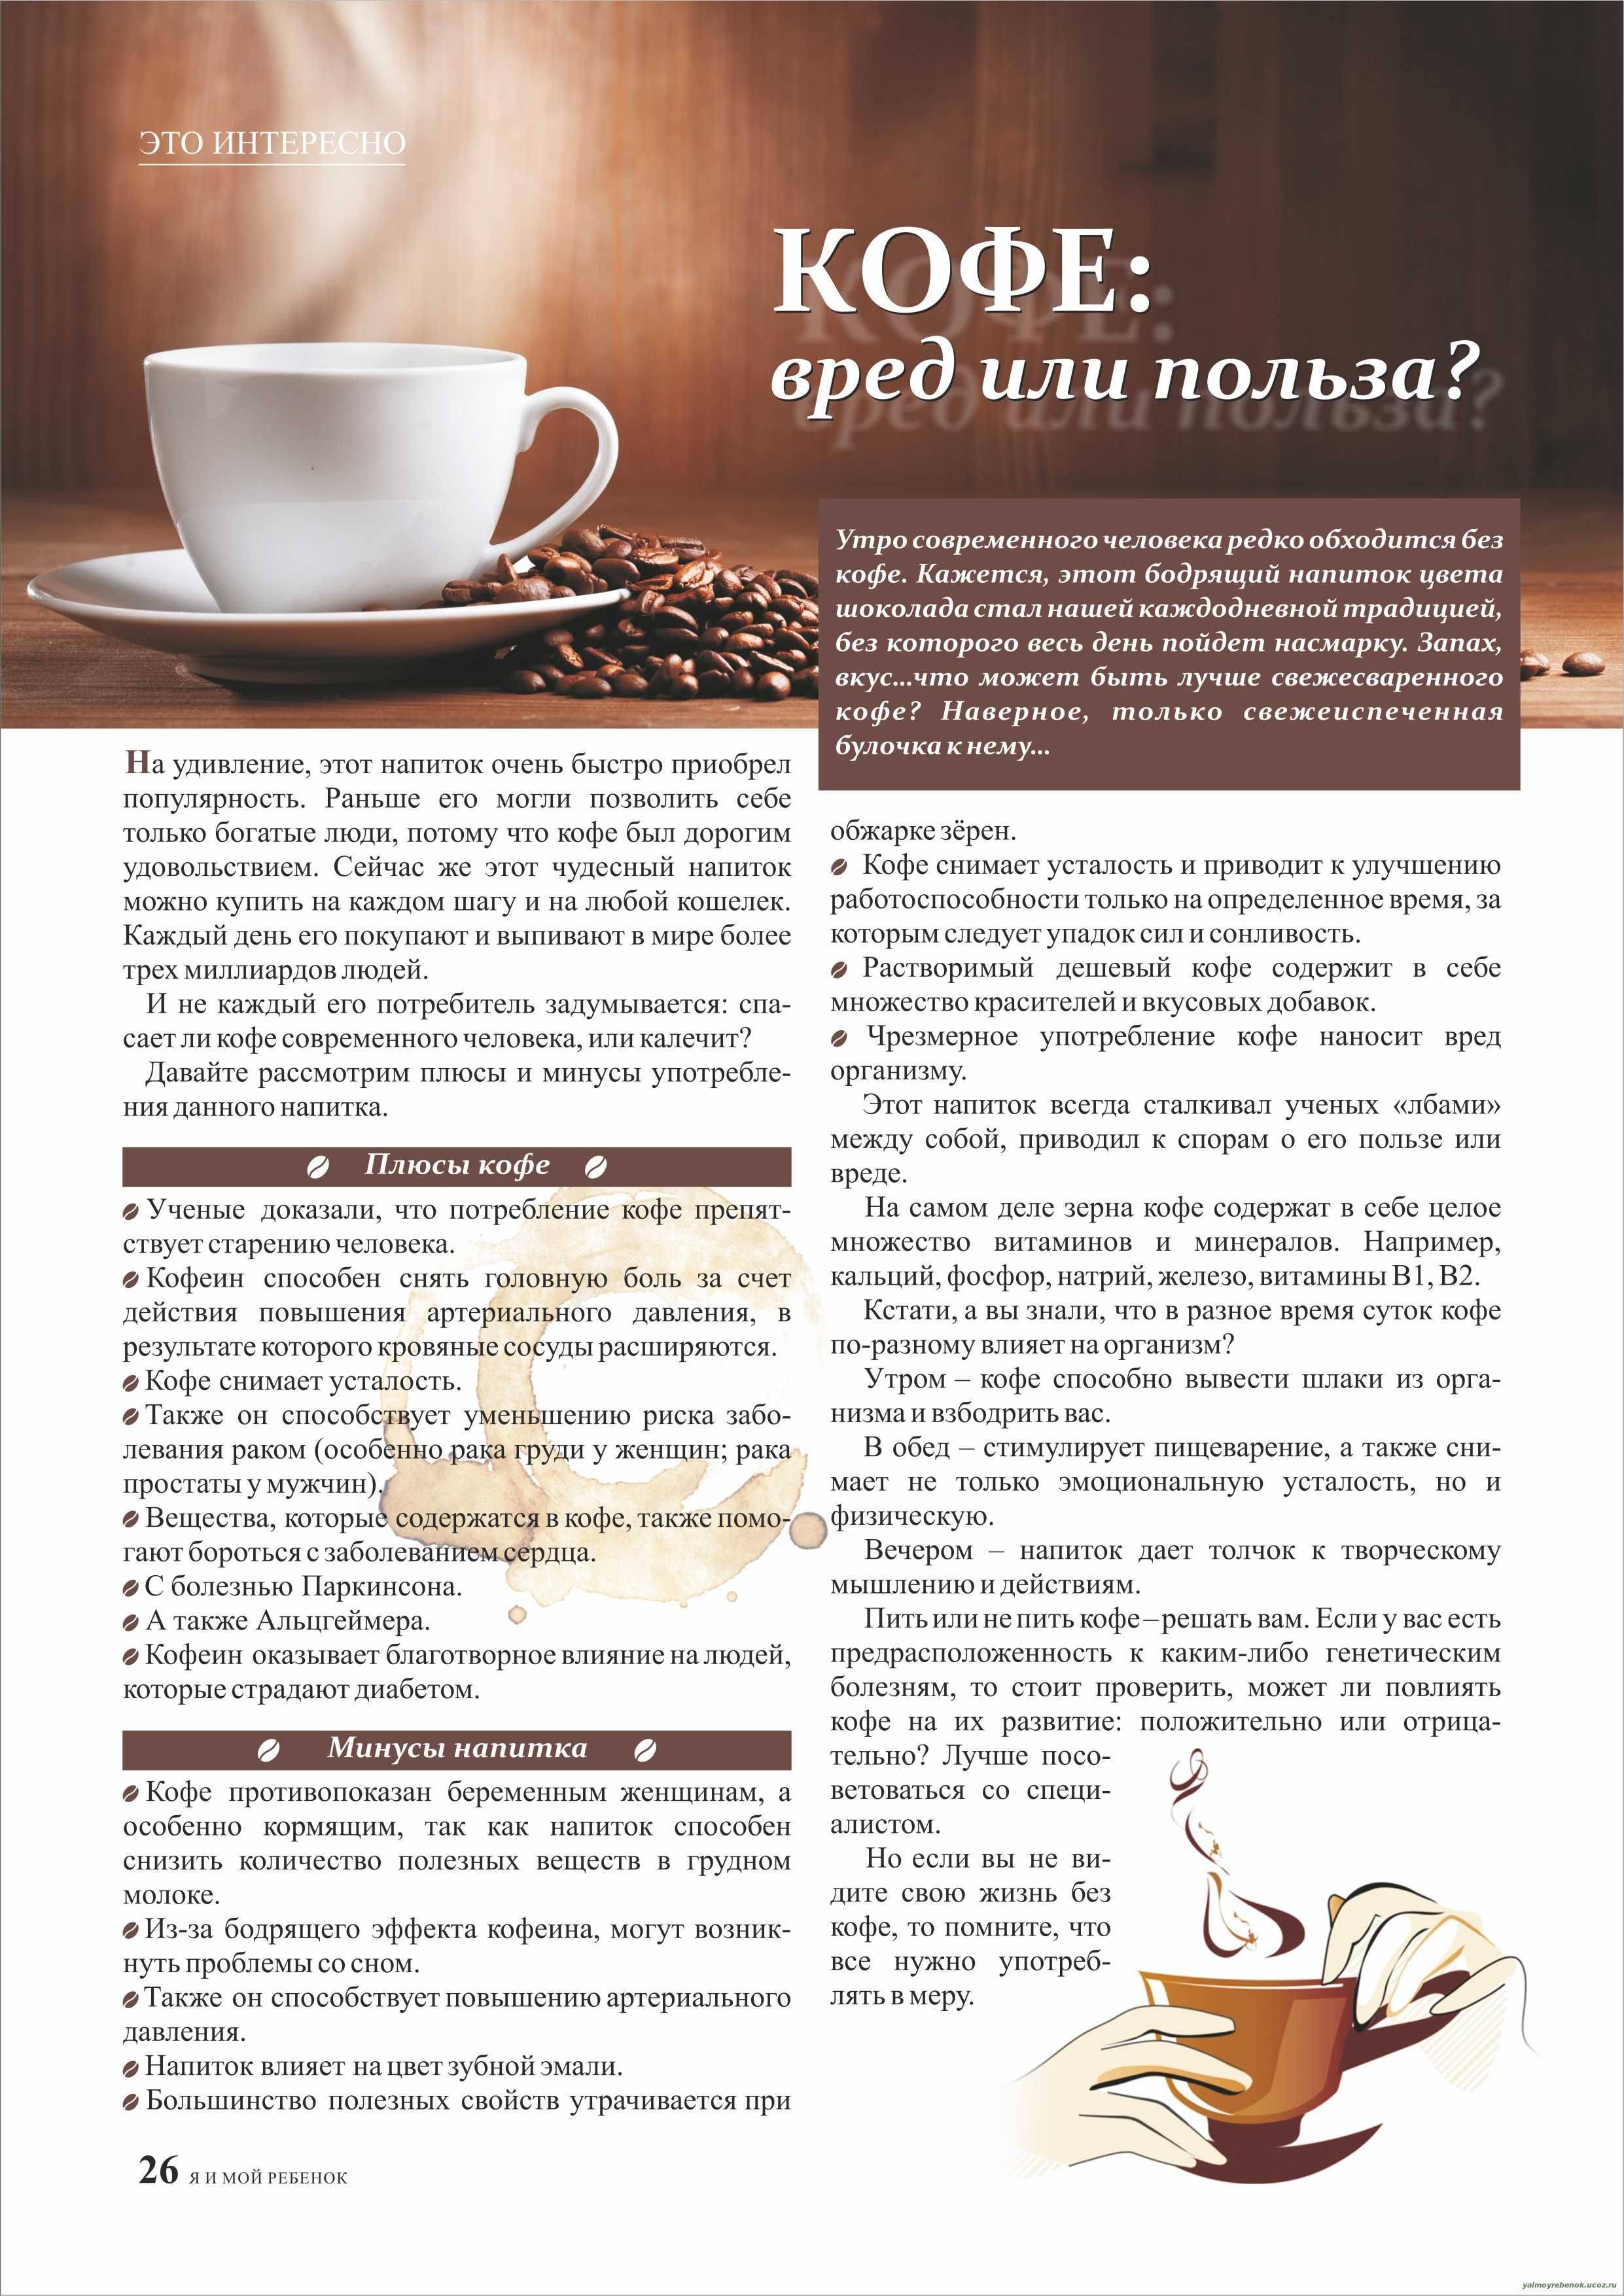 Как пить кофе с пользой для здоровья - шаг к здоровью